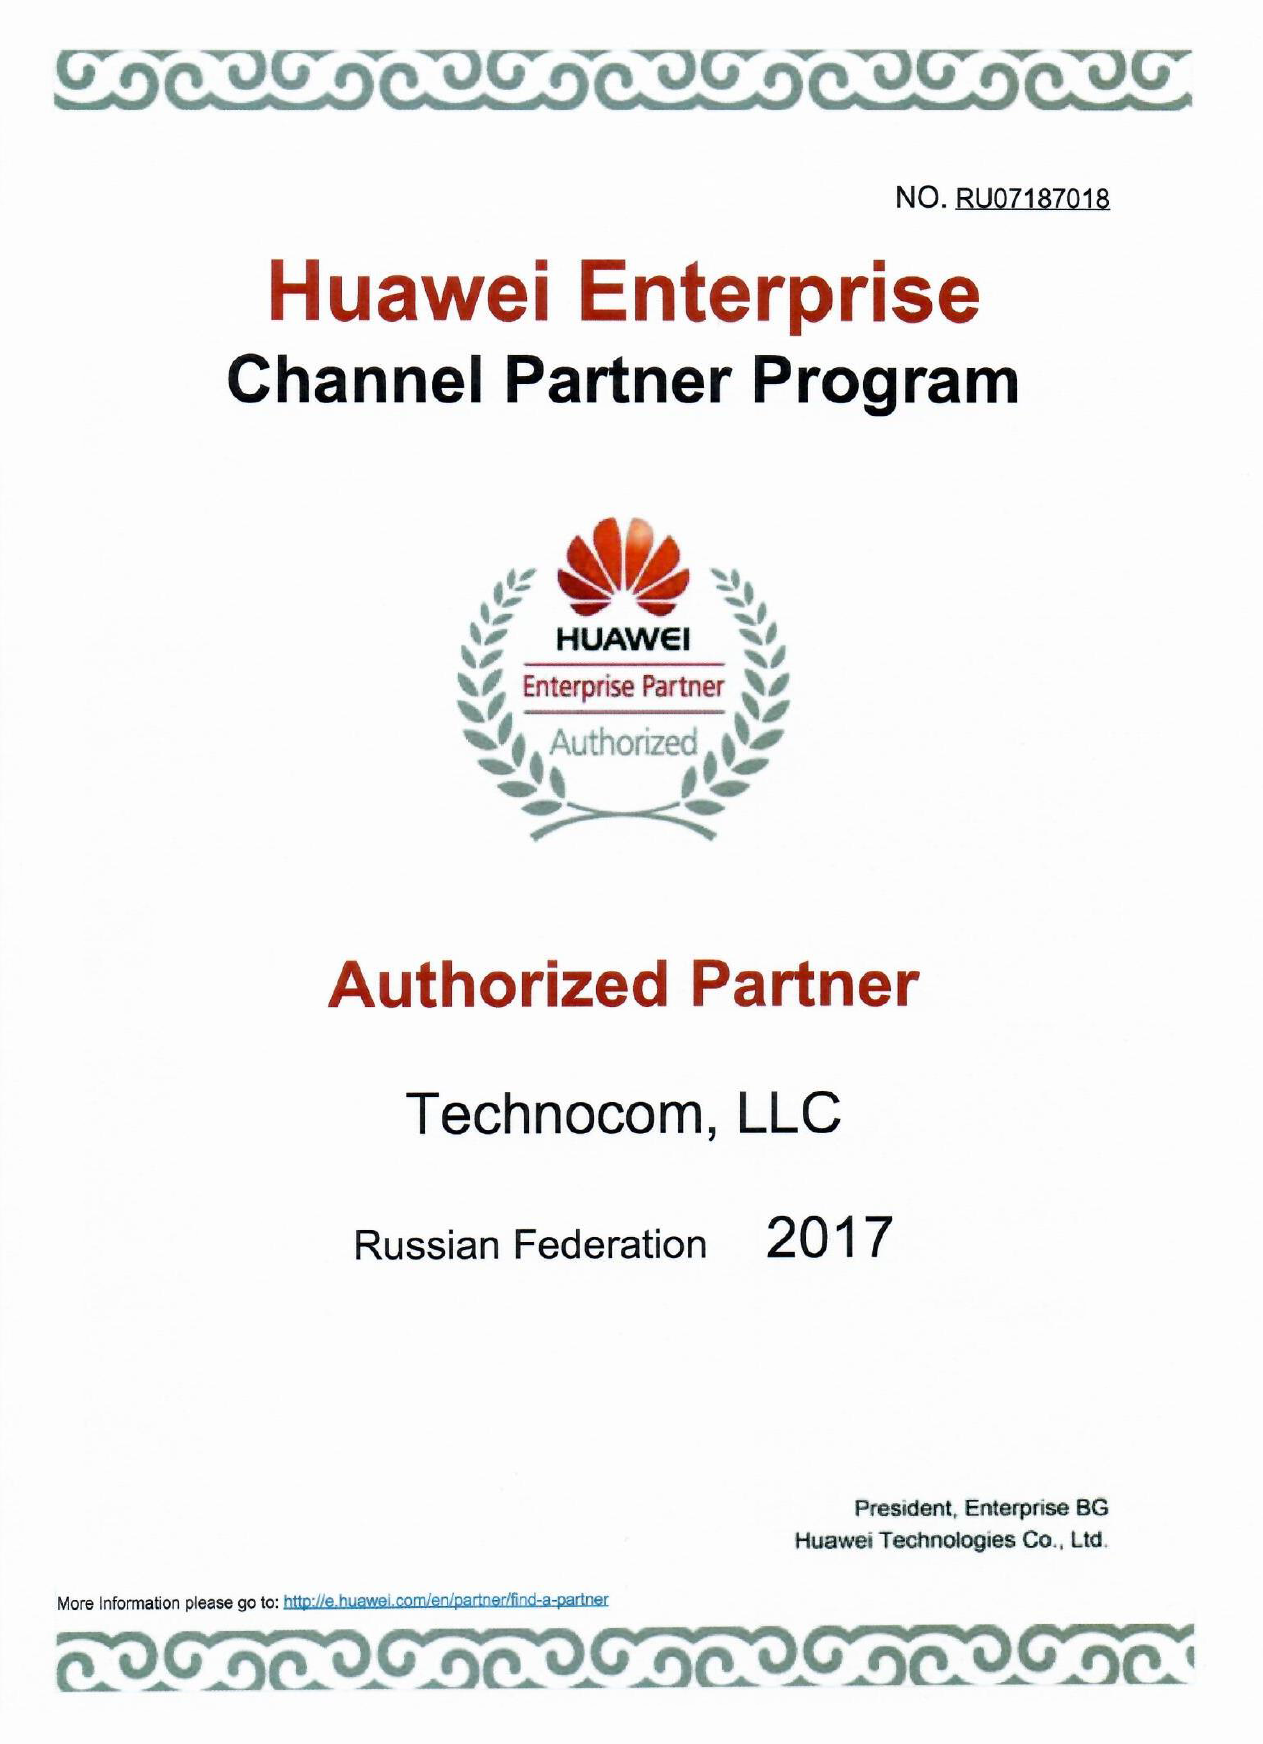 Сертификат авторизованного партнёра Huawei Enterprice